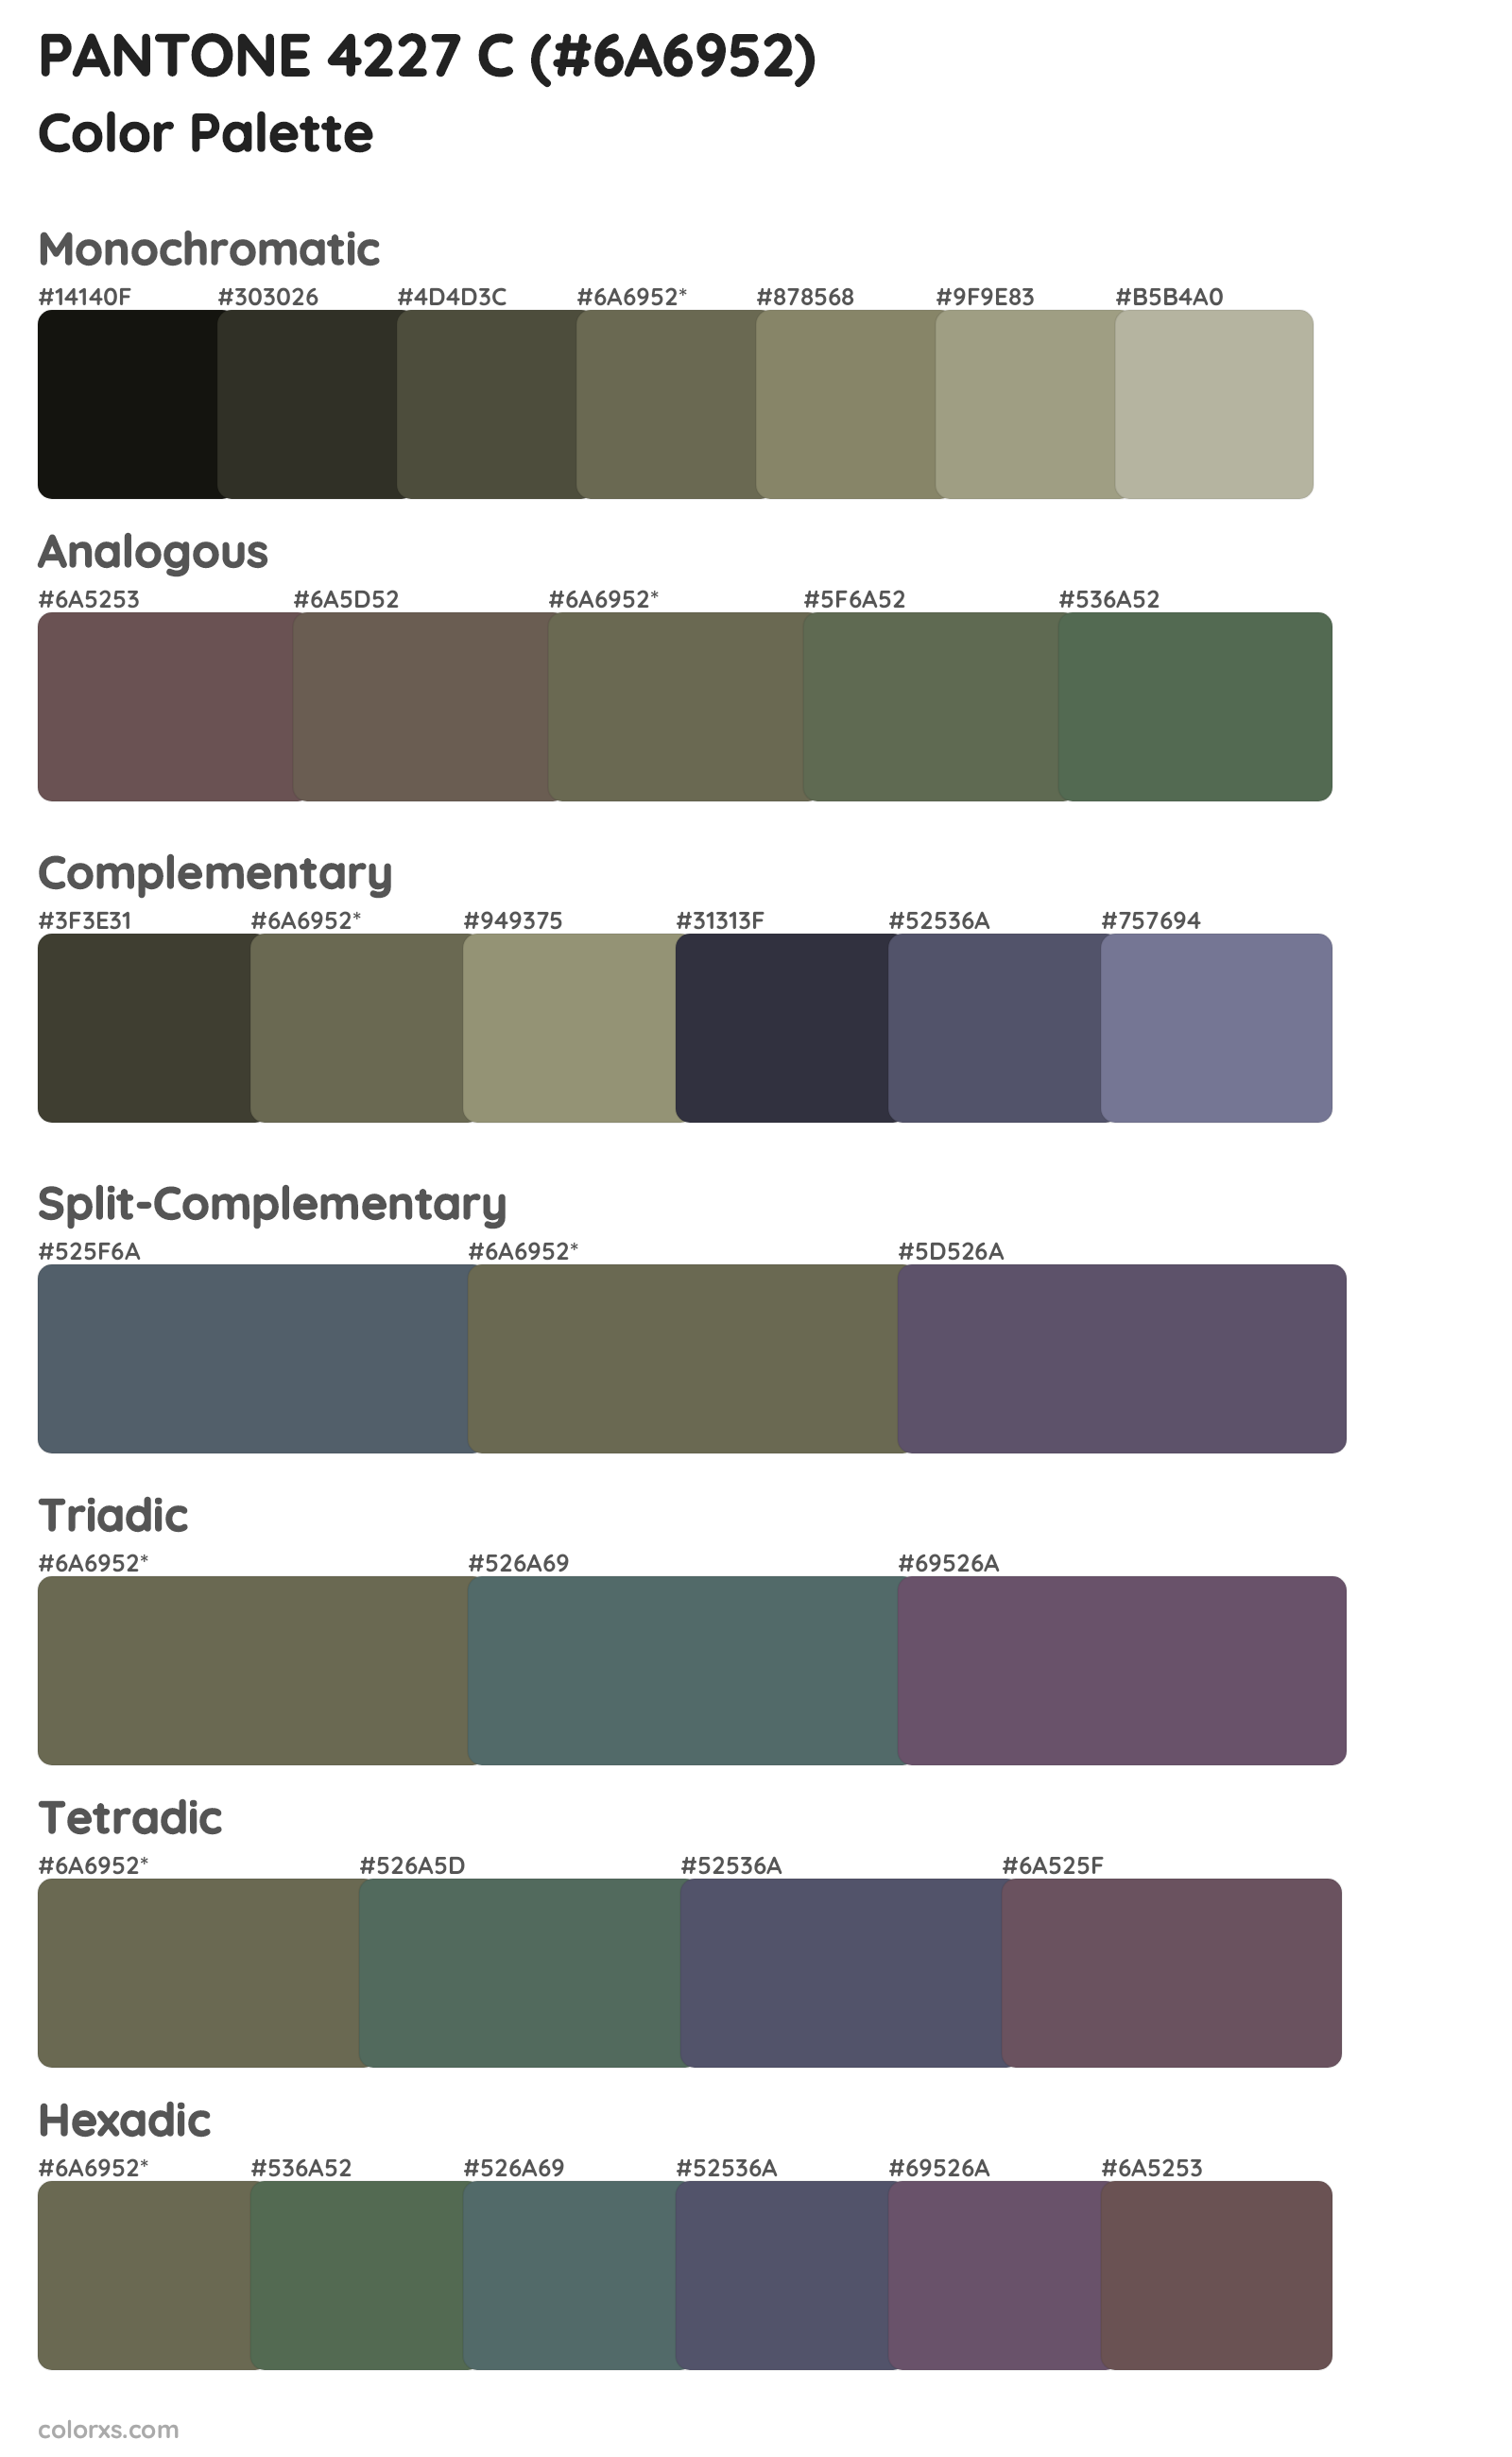 PANTONE 4227 C Color Scheme Palettes